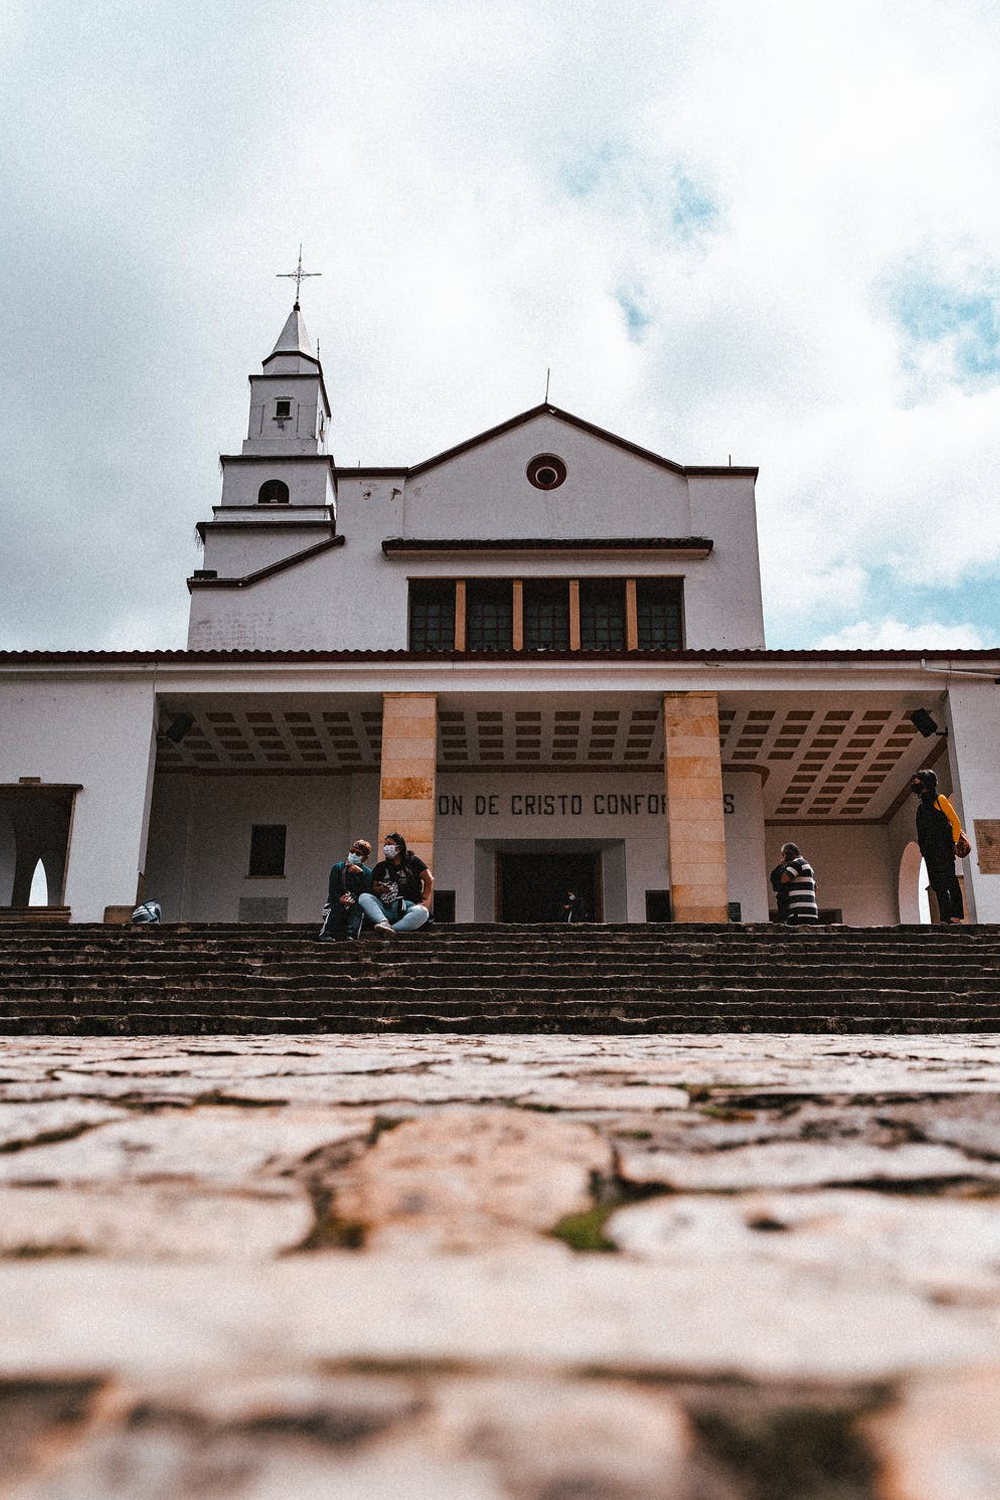 picture of a church in bogota